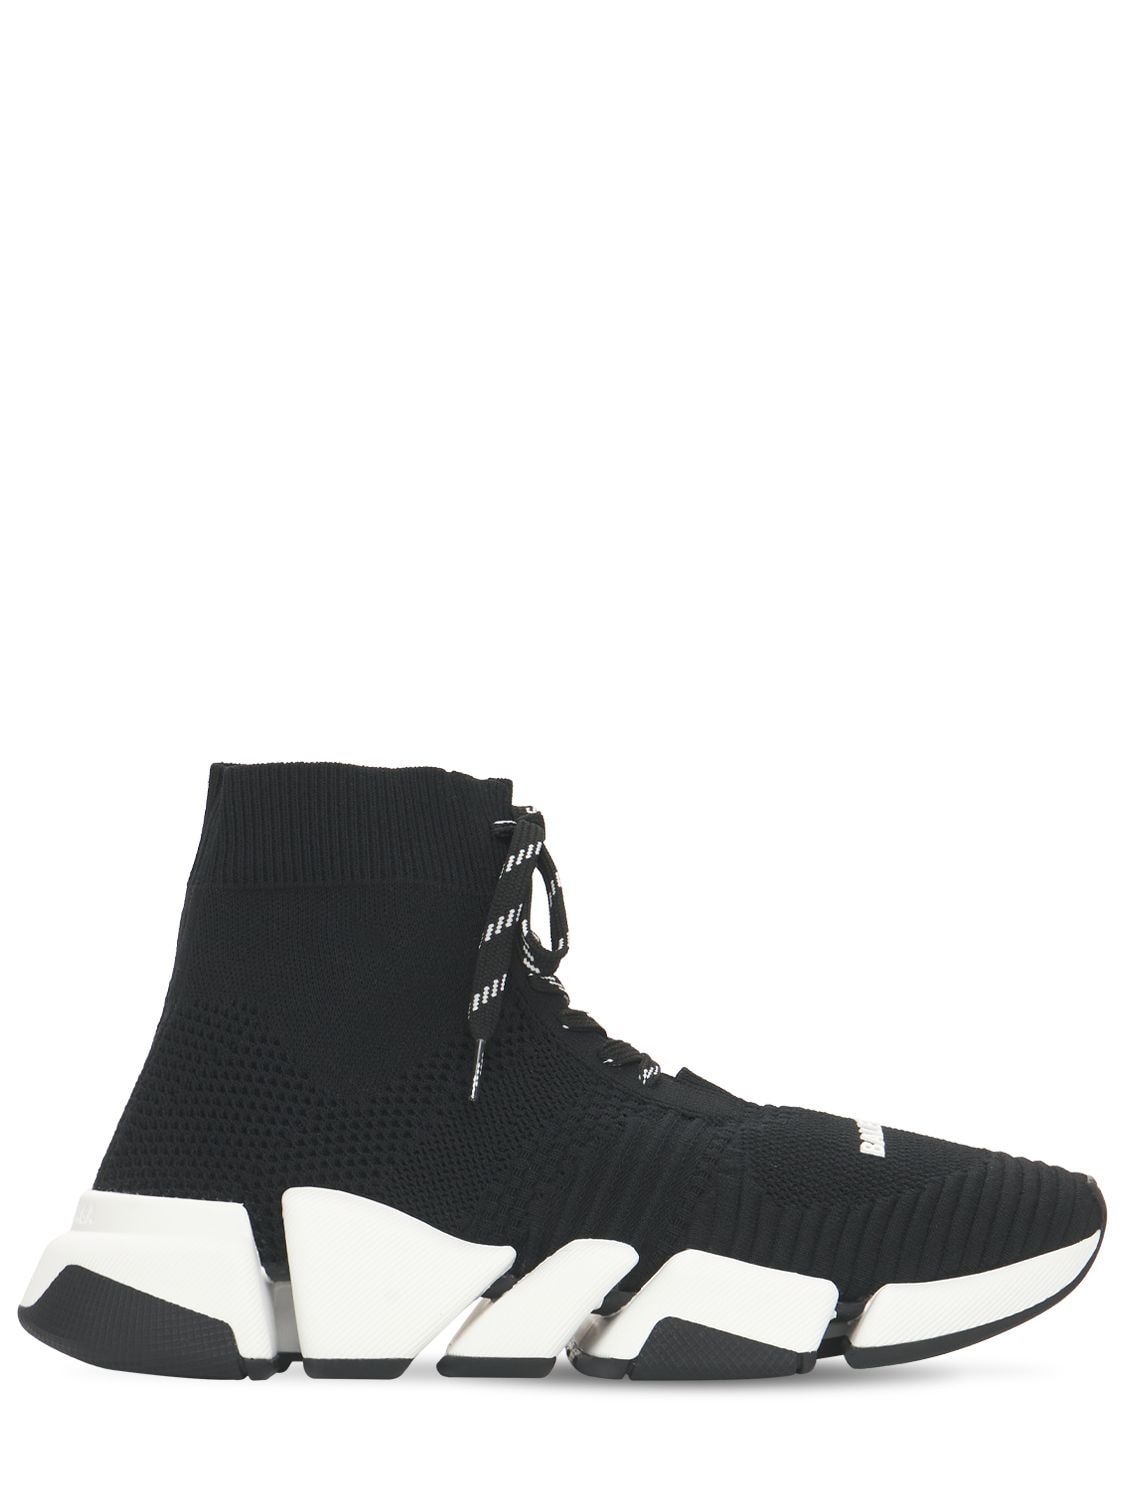 Balenciaga - 30mm speed 2.0 knit sneakers - Black/White | Luisaviaroma